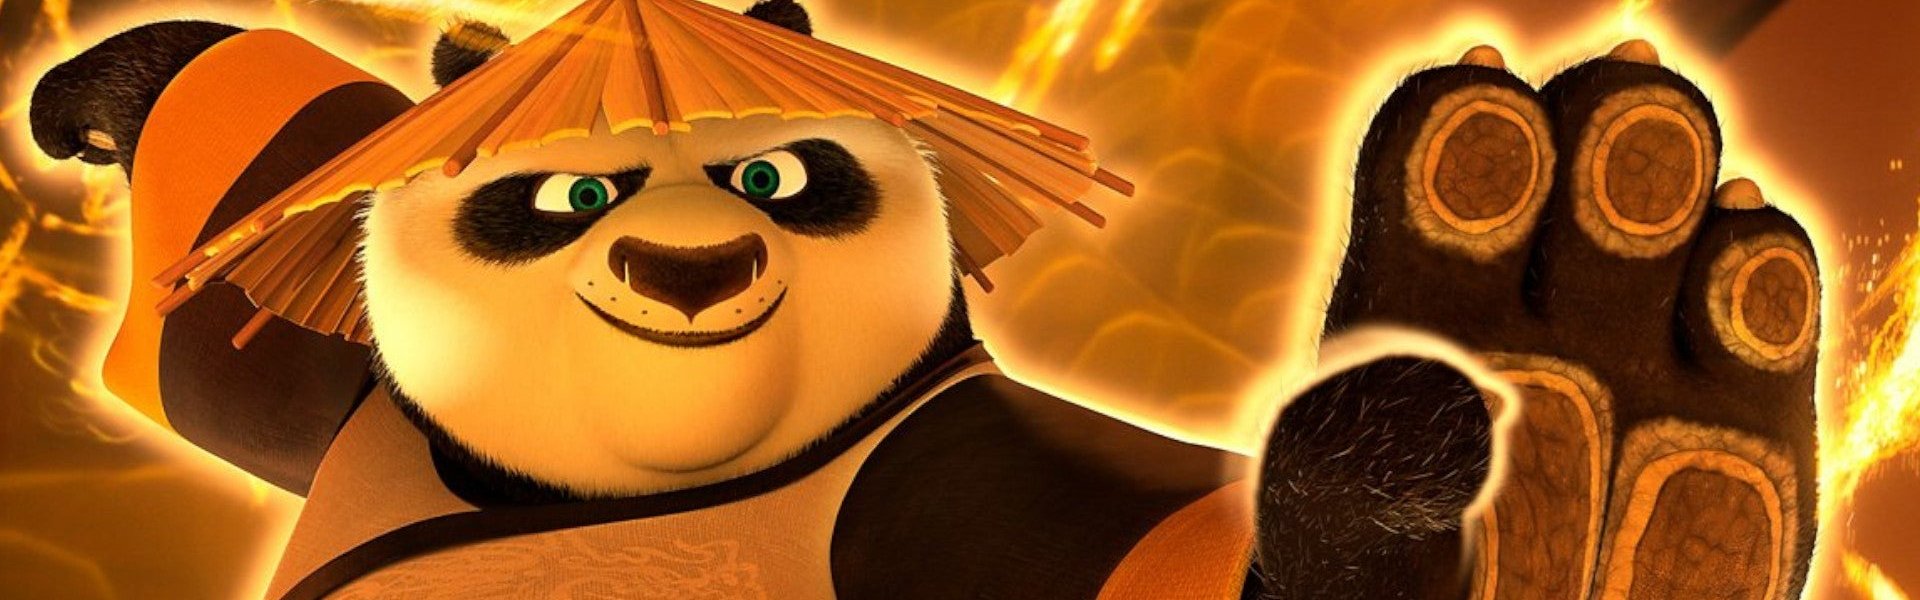 Crítica: ‘Kung Fu Panda 4’ mira no futuro da franquia, sem saber muito o que contar